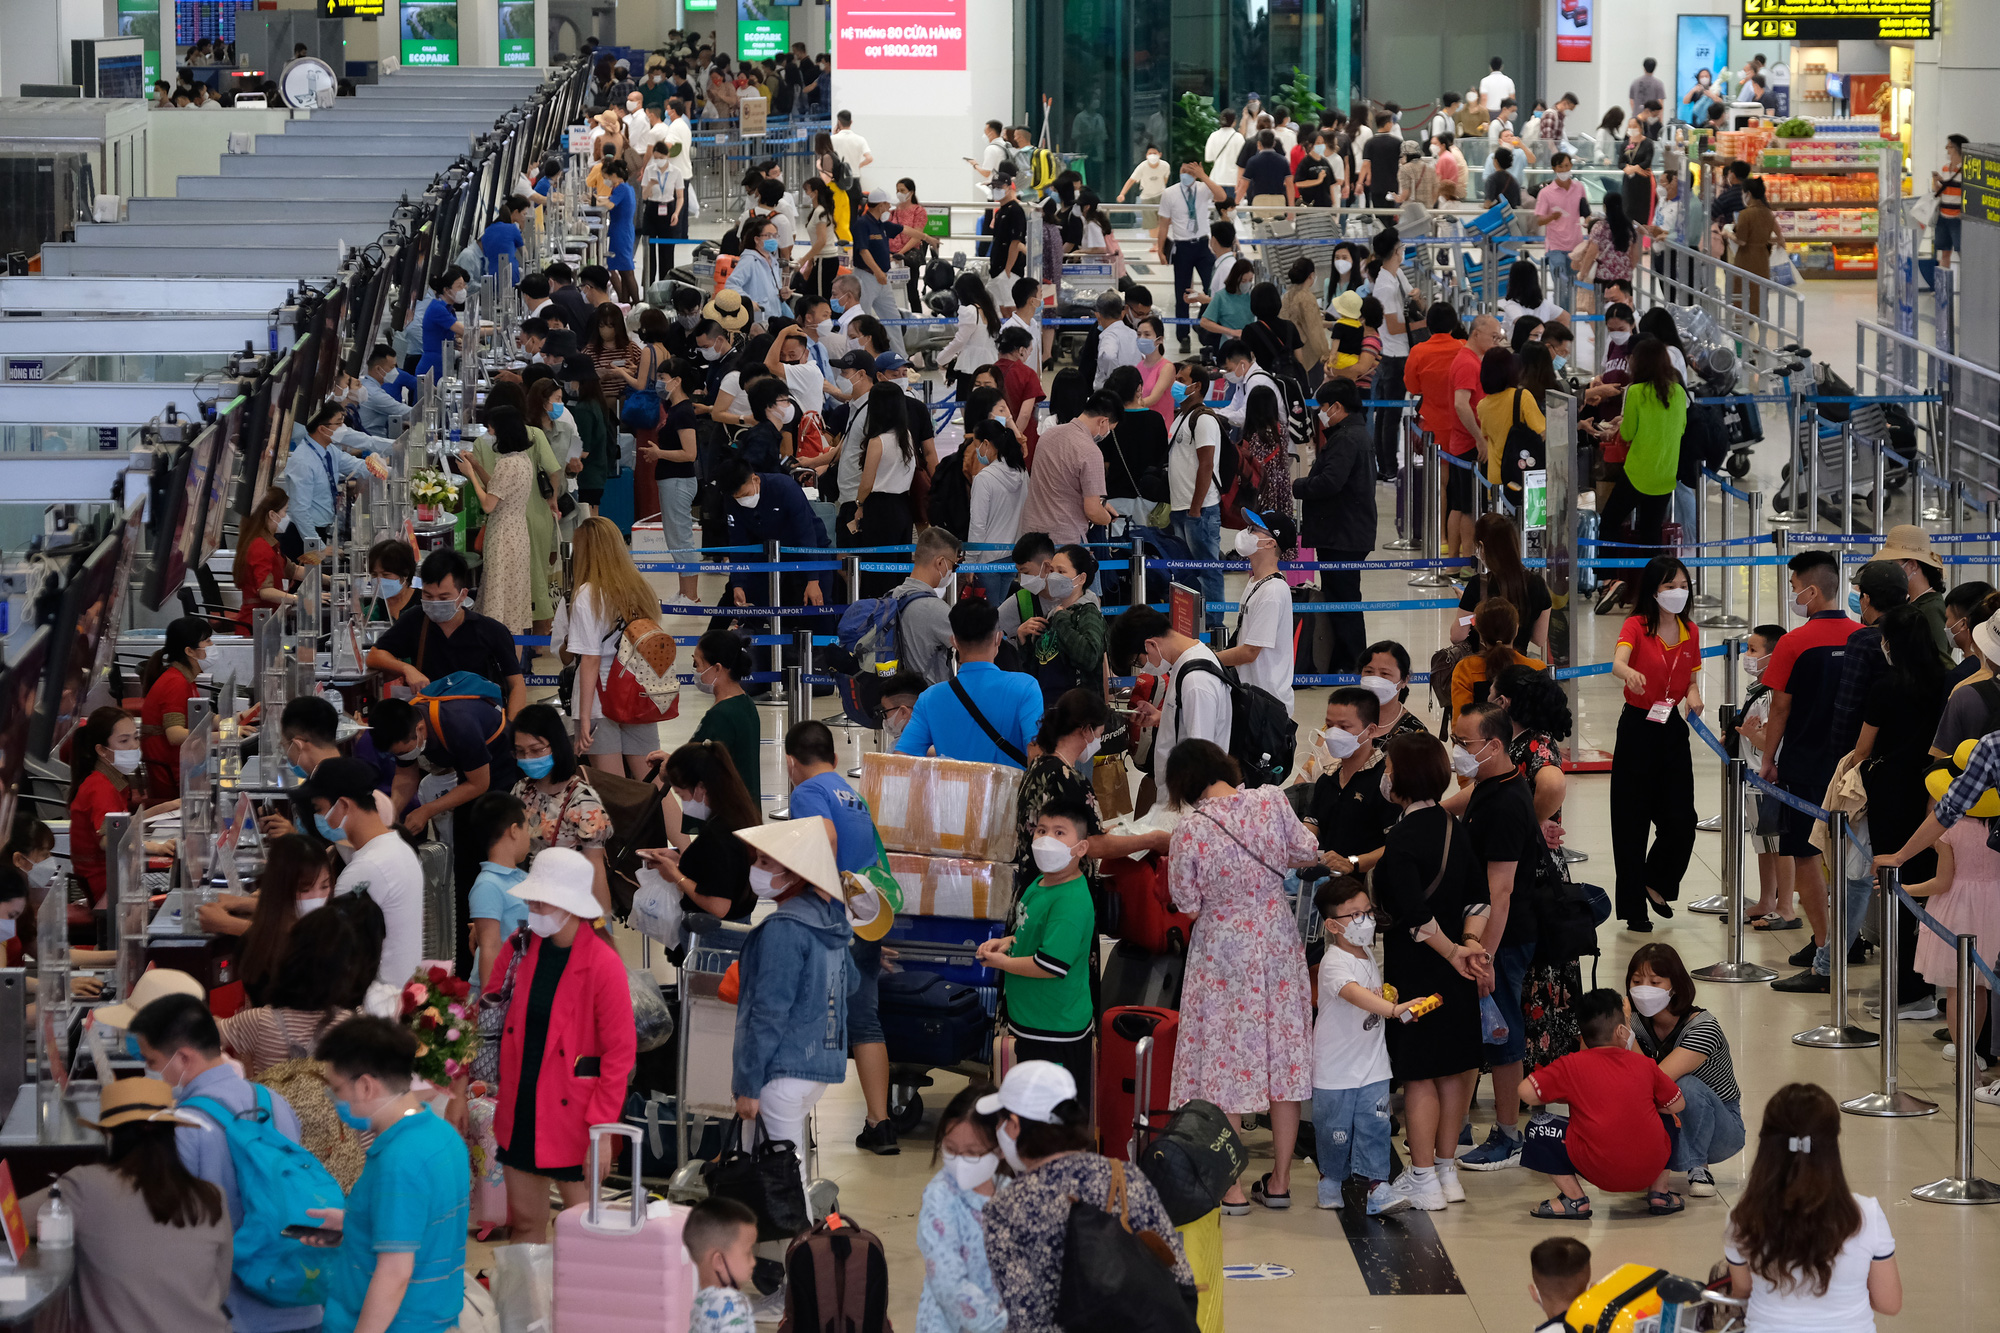 Sân bay Nội Bài đông đúc trước ngày nghỉ lễ, người người nhà nhà đi lu lịch sau tròn 1 năm làn sóng dịch lần thứ 4 - Ảnh 2.